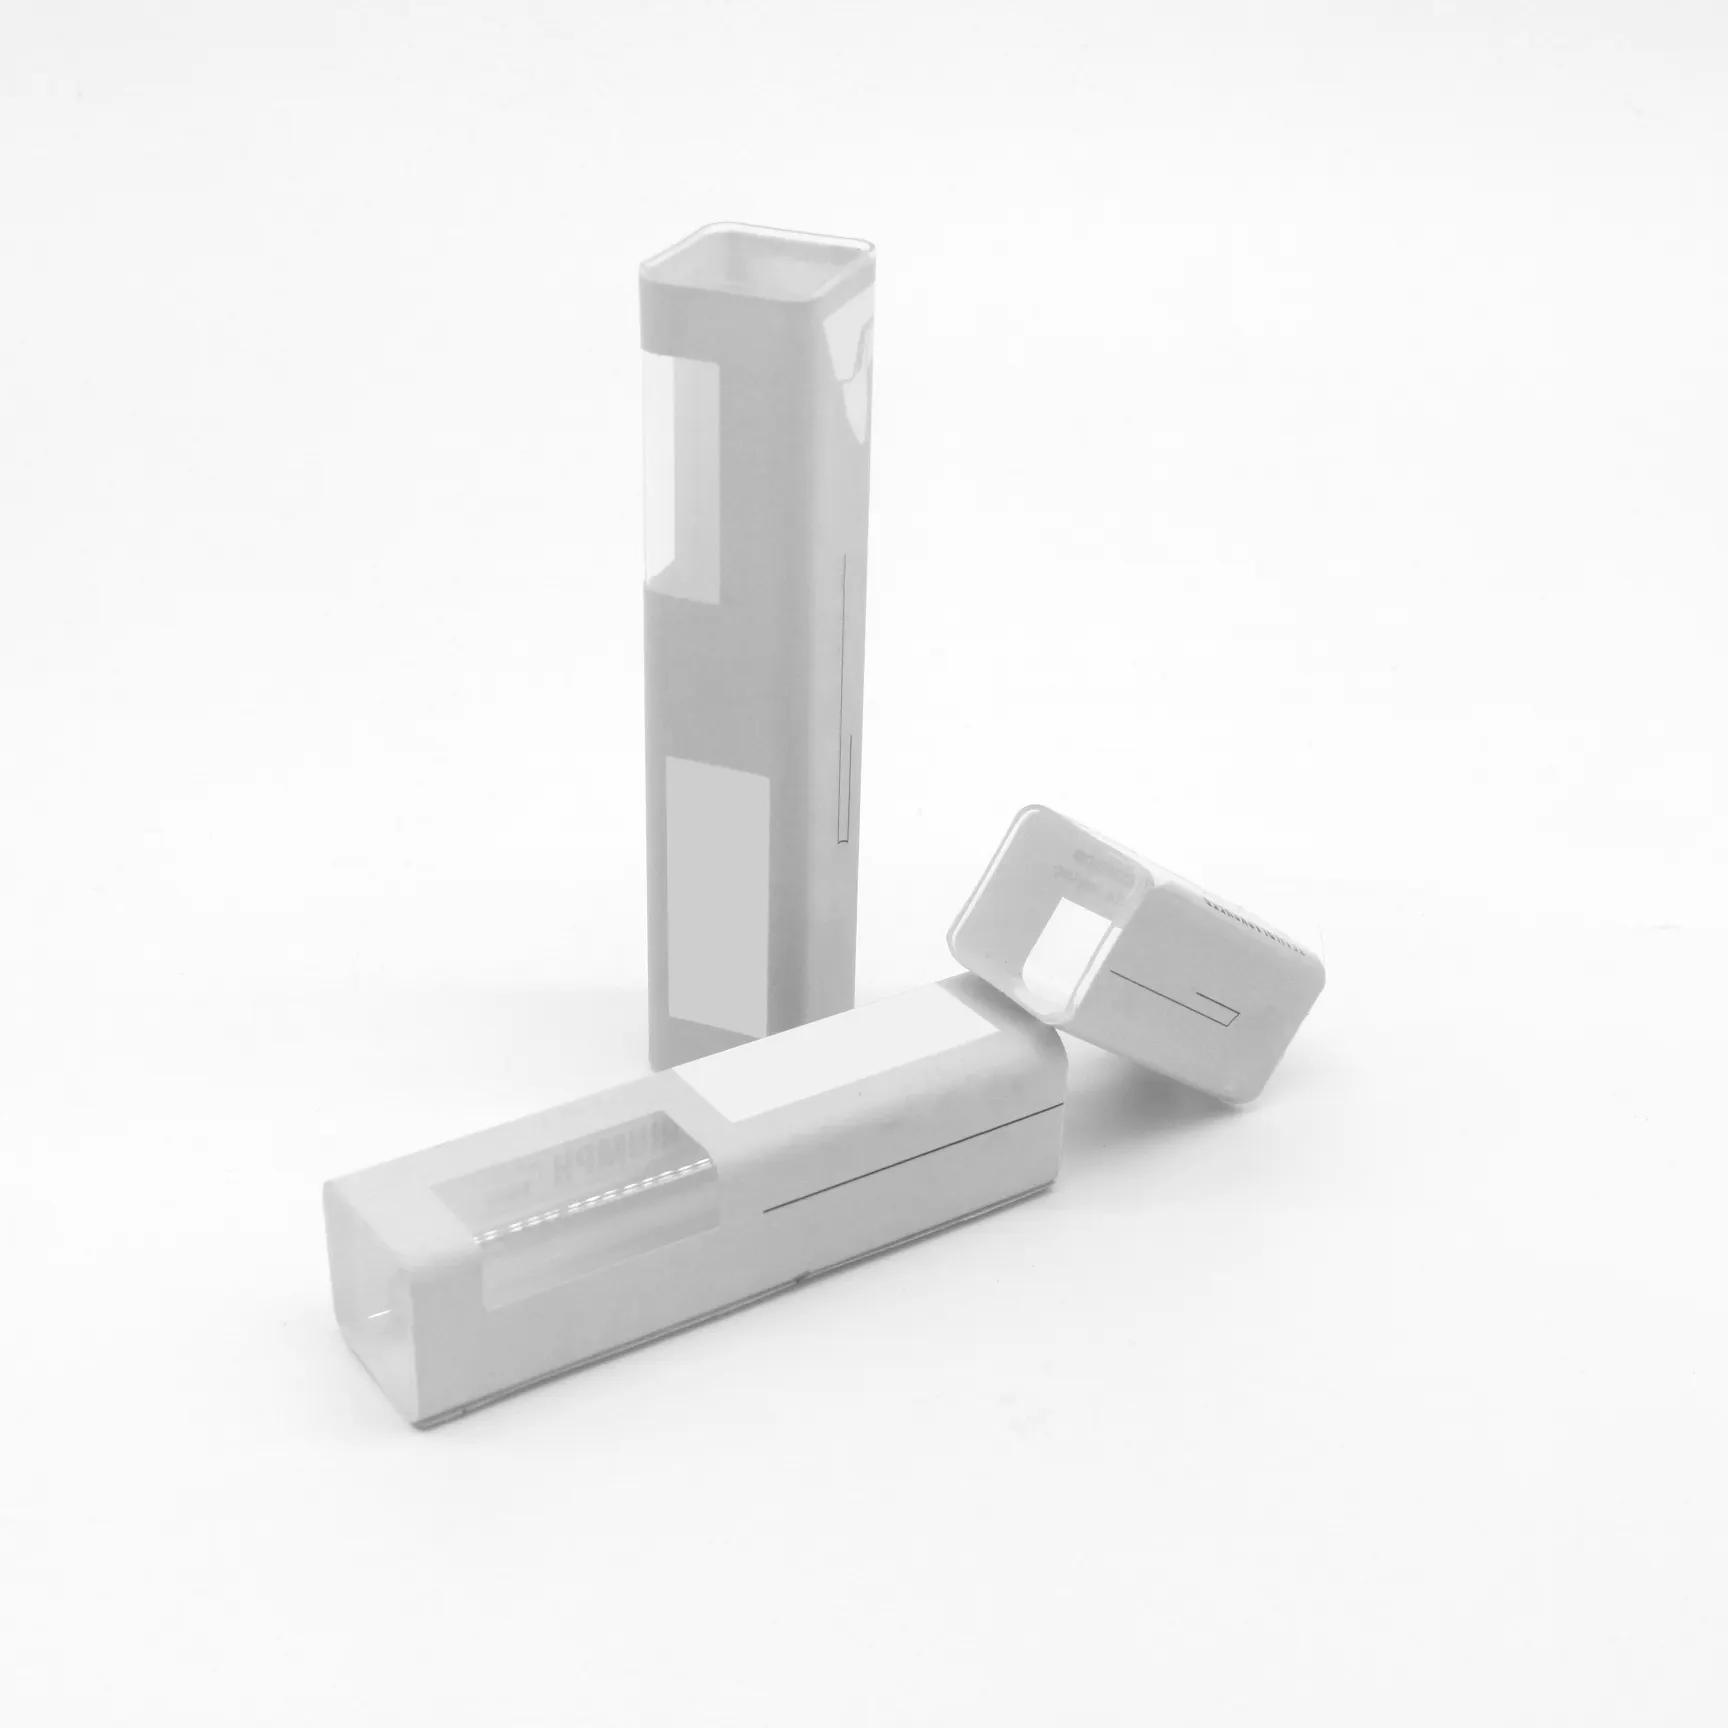 O tubo quadrado transparente de embalagem plástica com um comprimento lateral de 20,5 mm pode processar impressão e adesivos